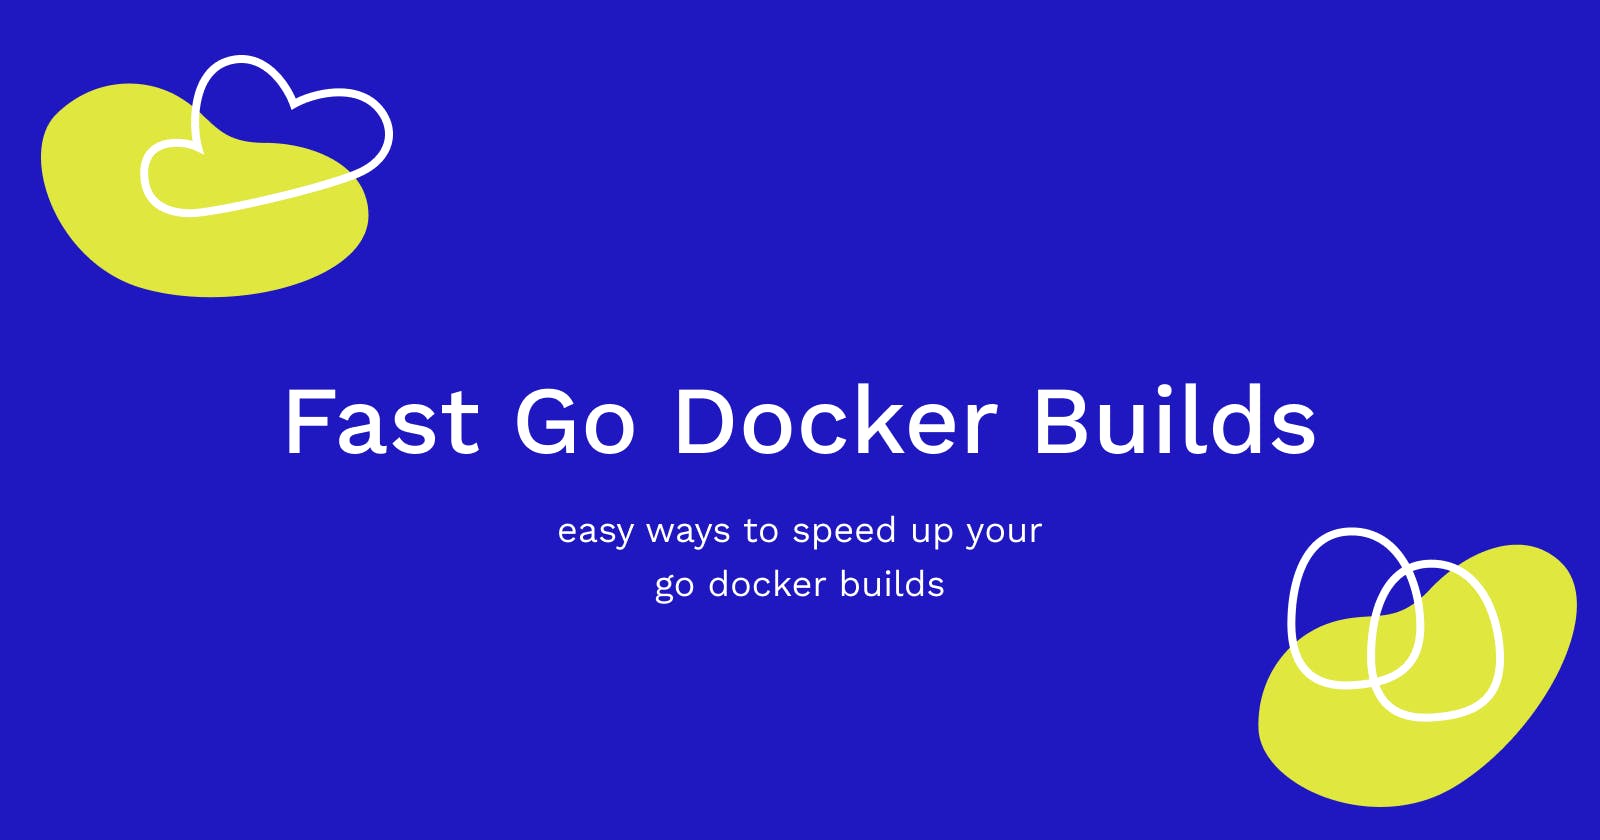 Fast Go Docker Builds